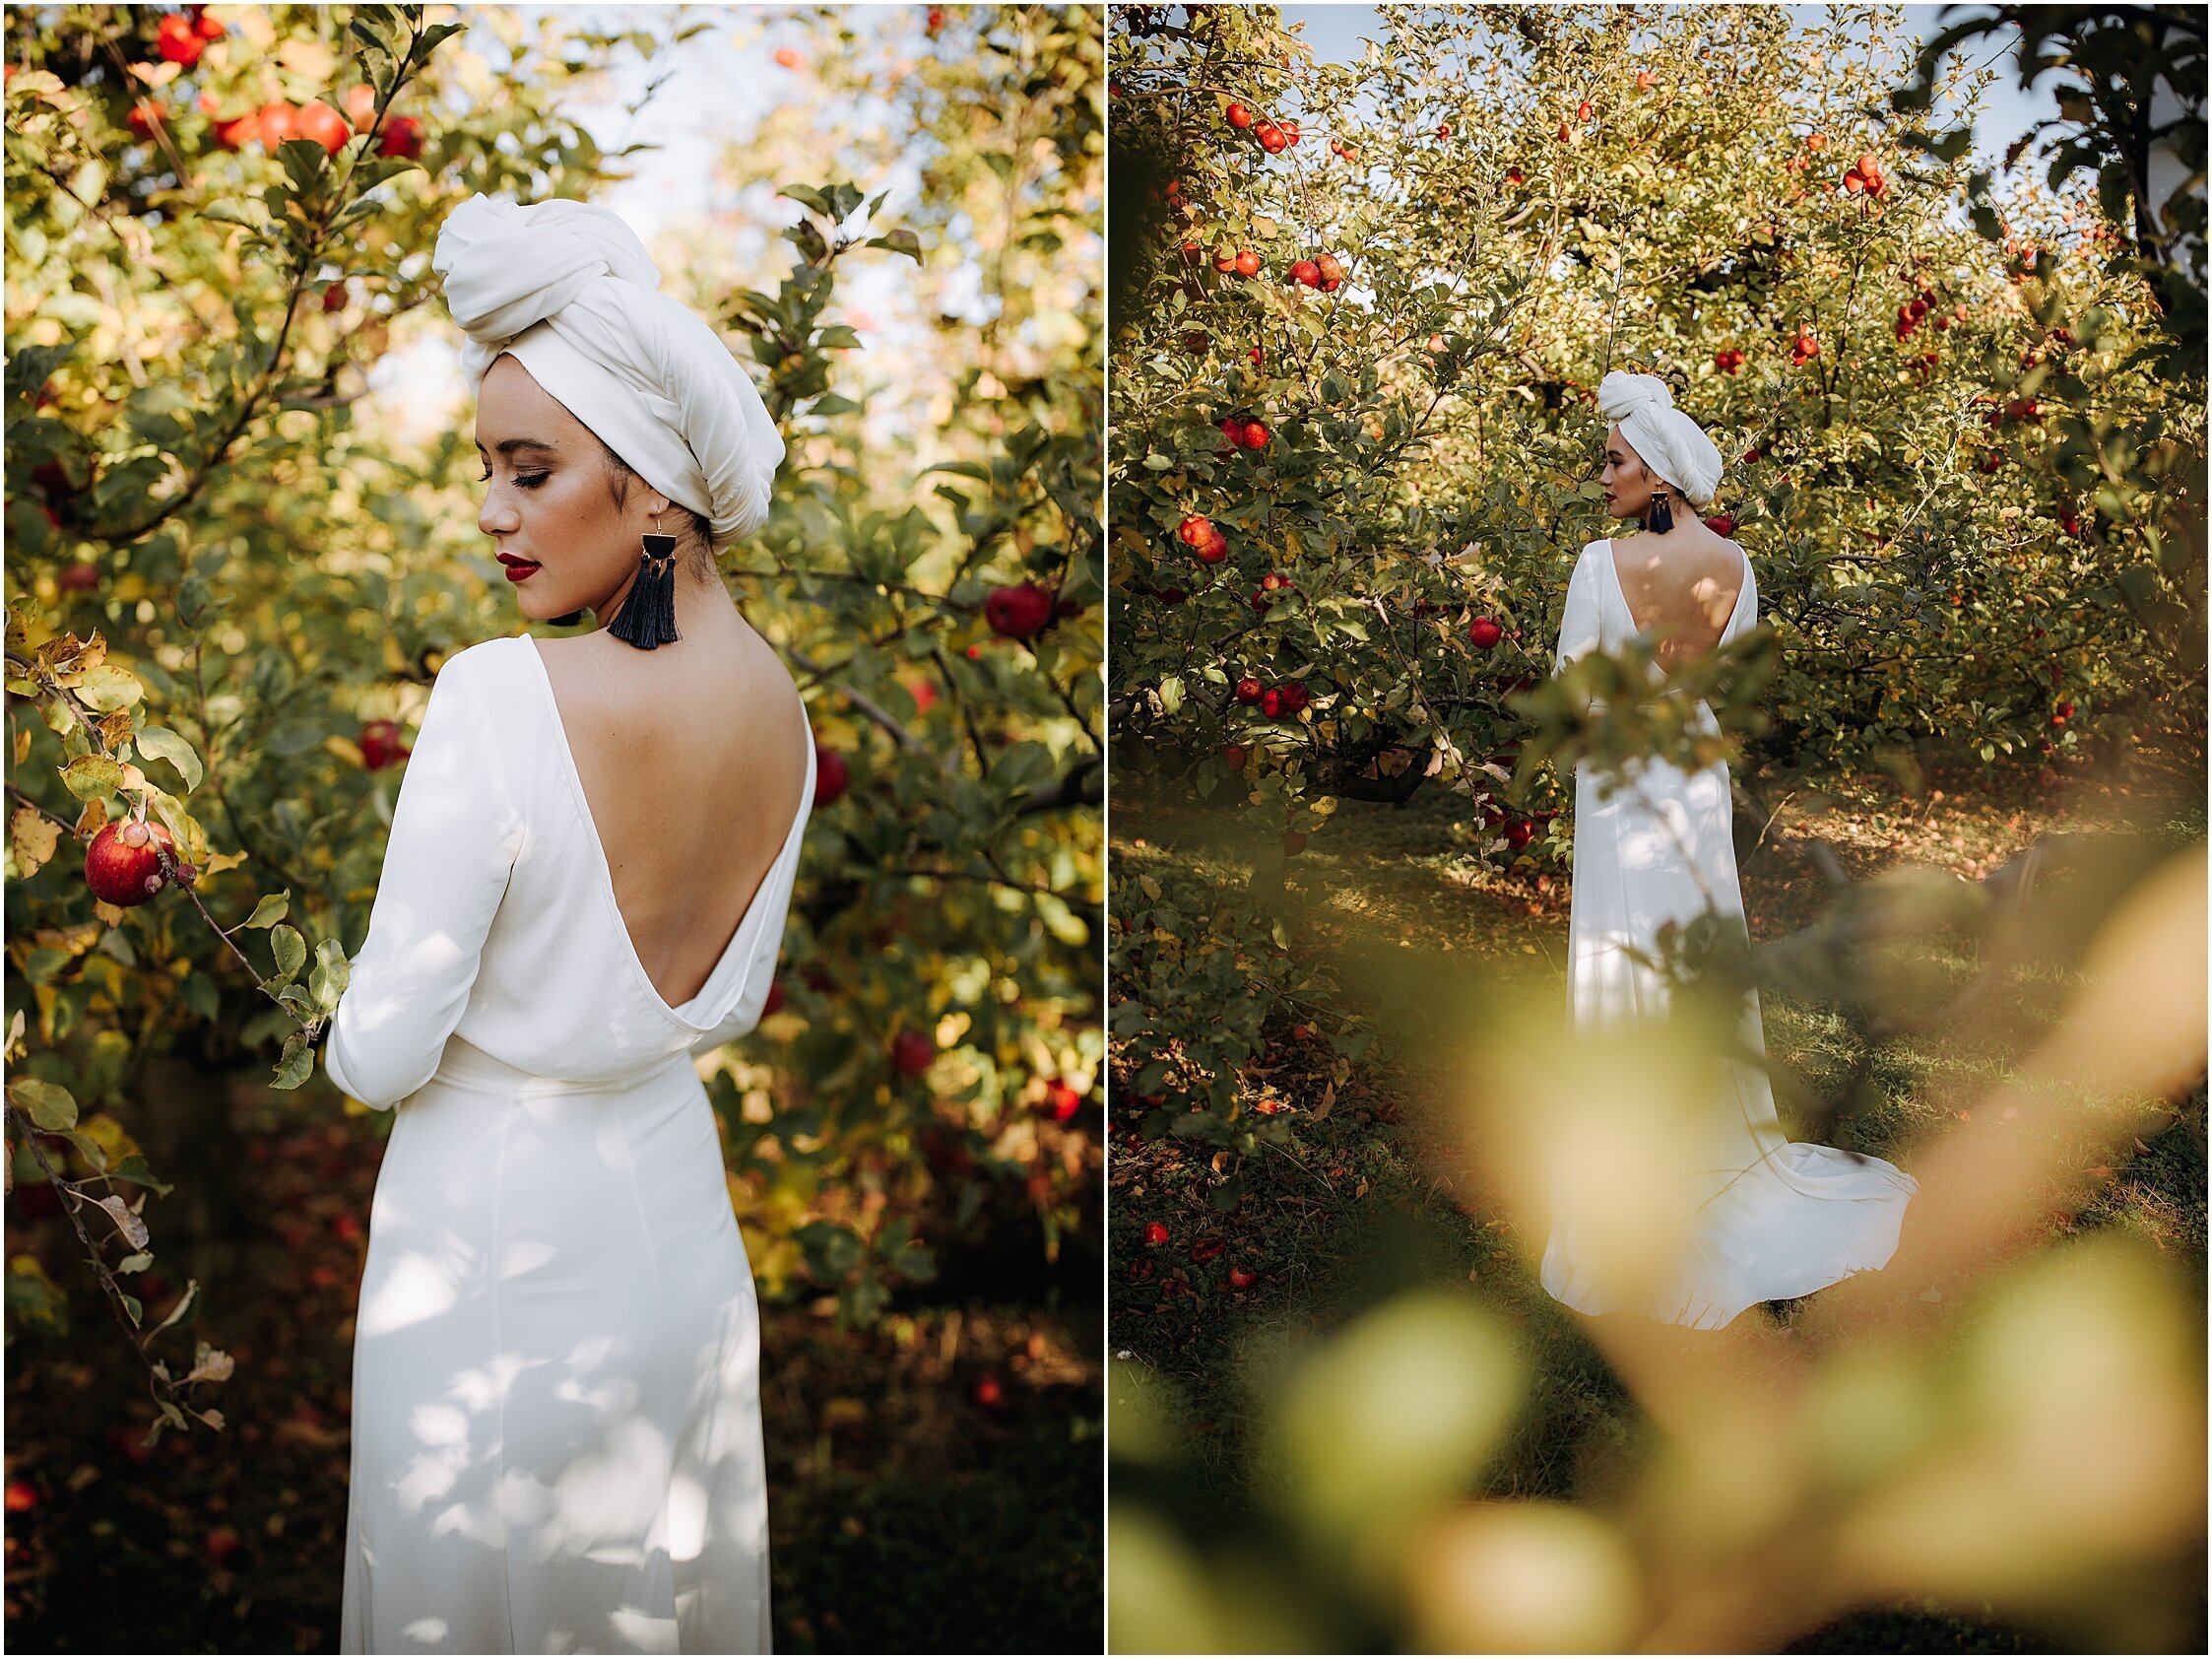 Zanda+Auckland+wedding+photographer+unique+portrait+photoshoot+ideas+autumn+winter+Windmill+apple+orchard+Coatesville+New+Zealand_8.jpeg